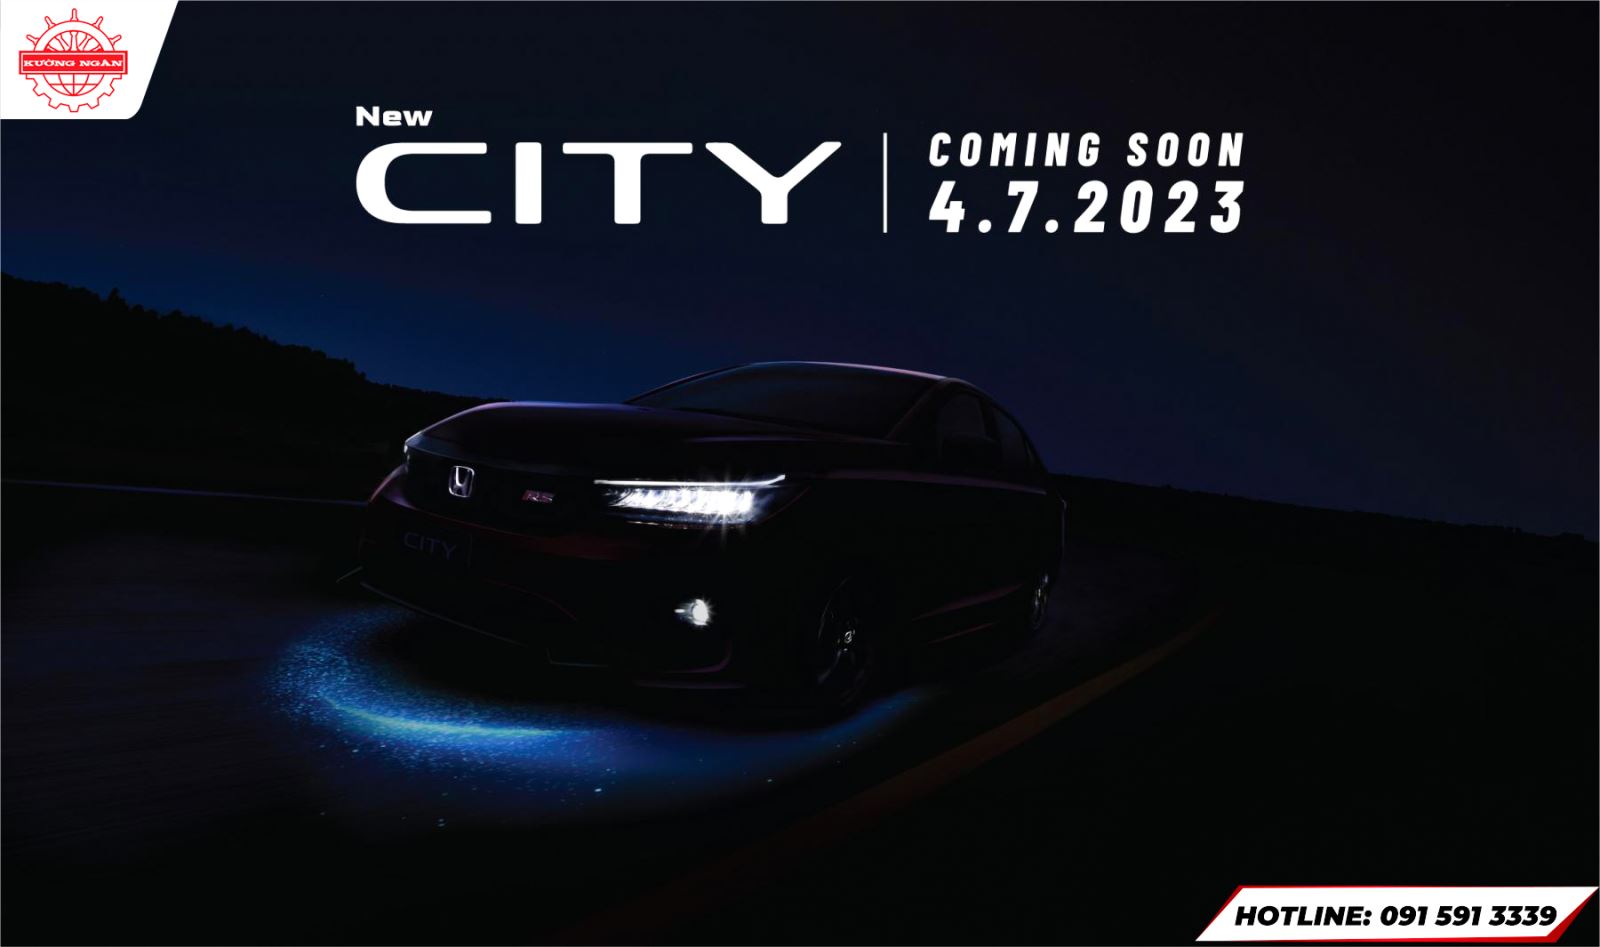 Honda CITY bản nâng cấp sẽ được ra mắt tại Việt Nam vào ngày 04/07/2023